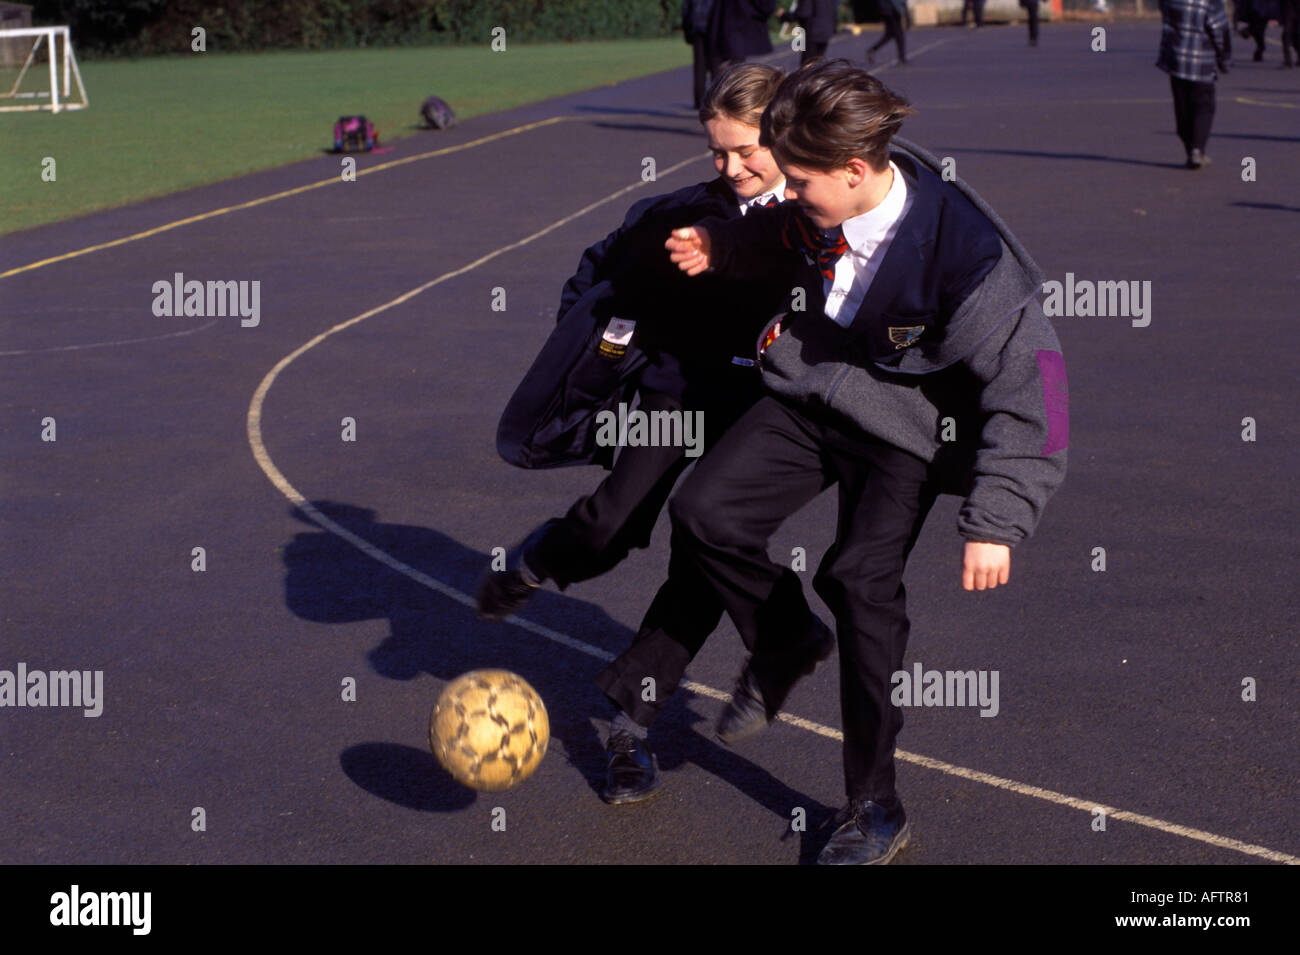 Gymnasium 1990er Großbritannien. Teenager spielen Fußball auf dem Schulhof, bevor sie nach Hause gehen Amersham Buckinghamshire 1990 HOMER SYKES Stockfoto